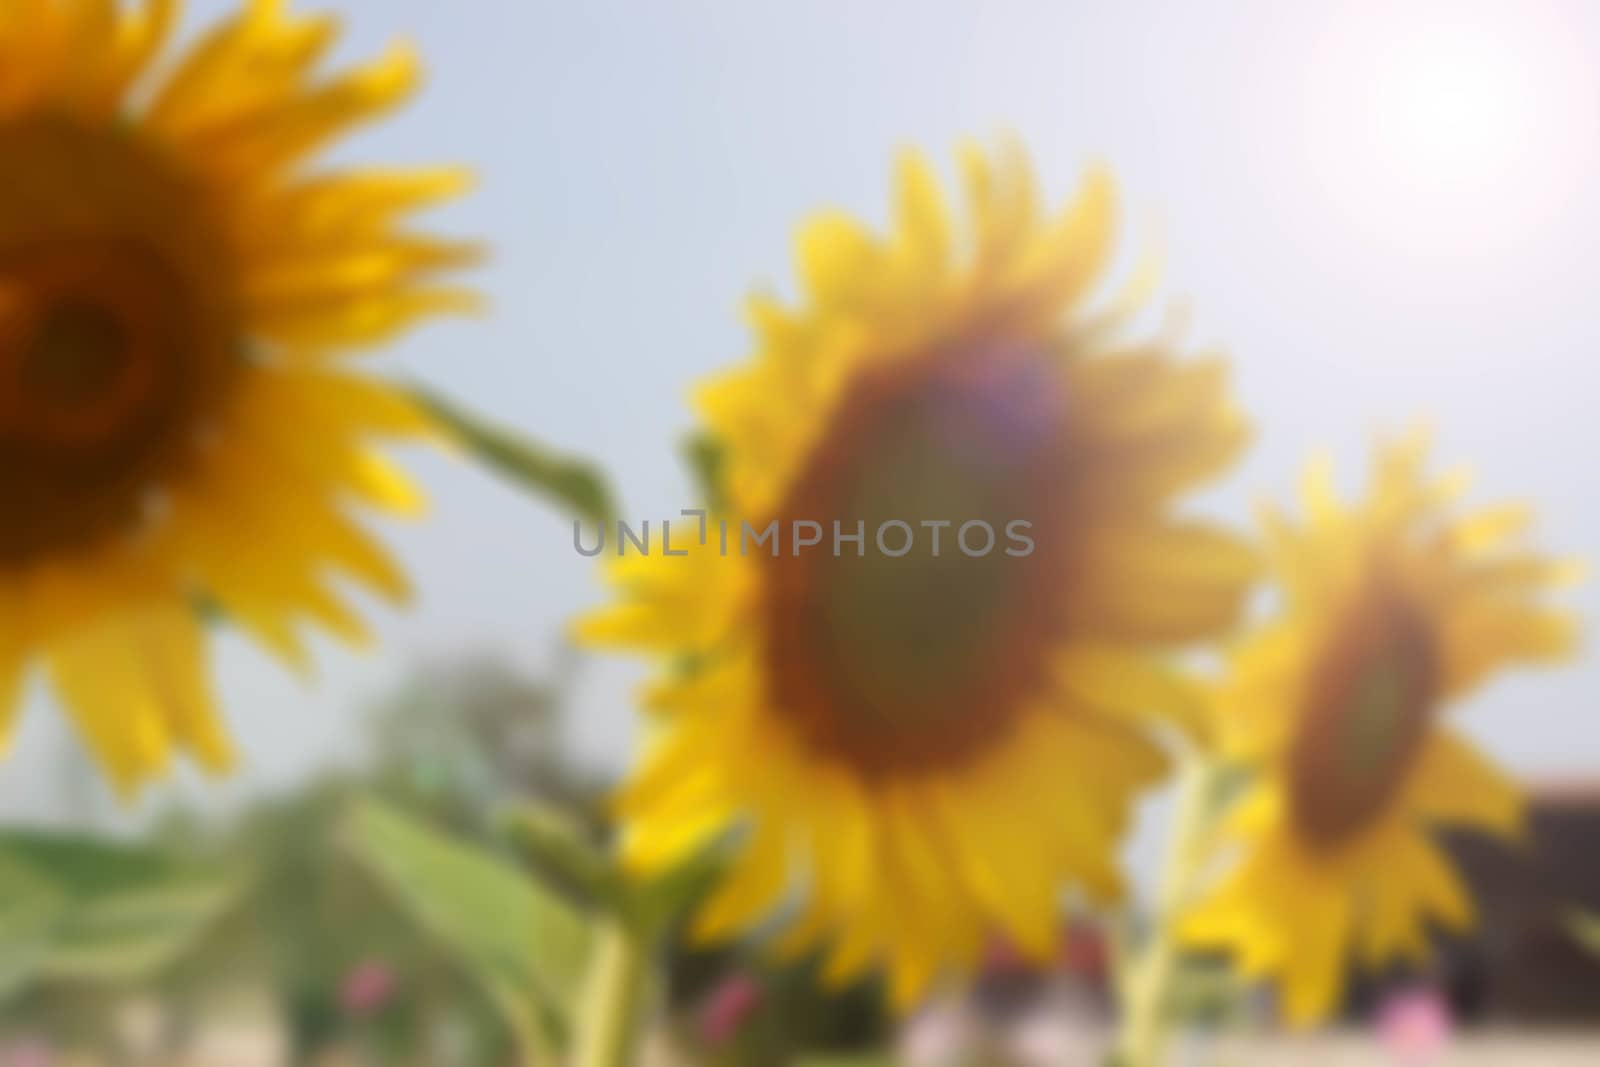 Sunflower and sunlight blur background by primzrider